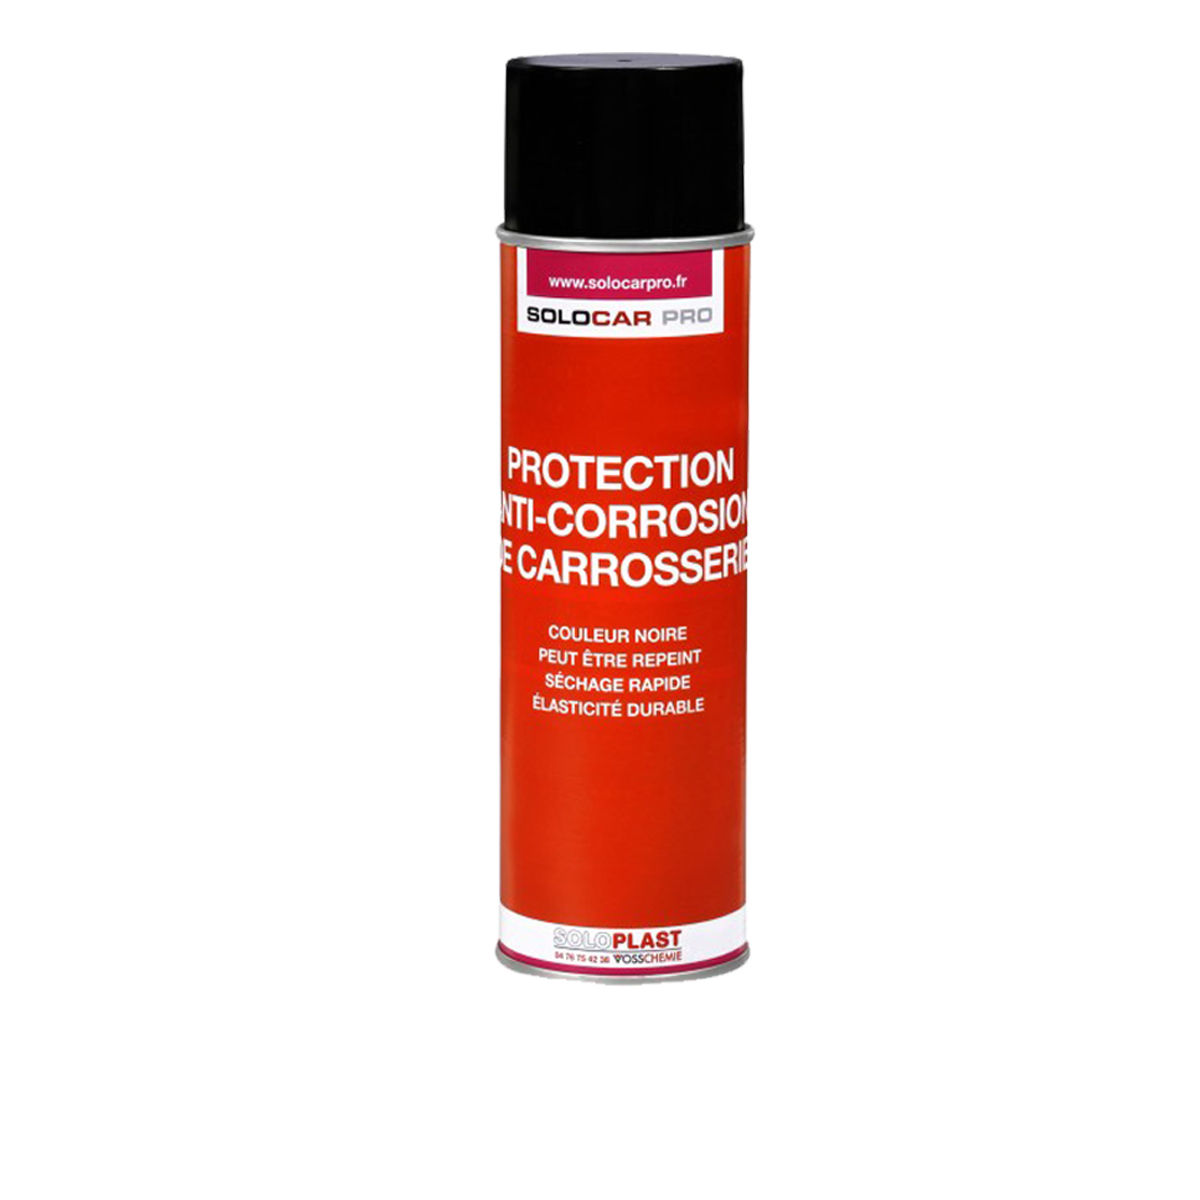 Protection Anticorrosion De Carrosserie Solocar Pro 500ml